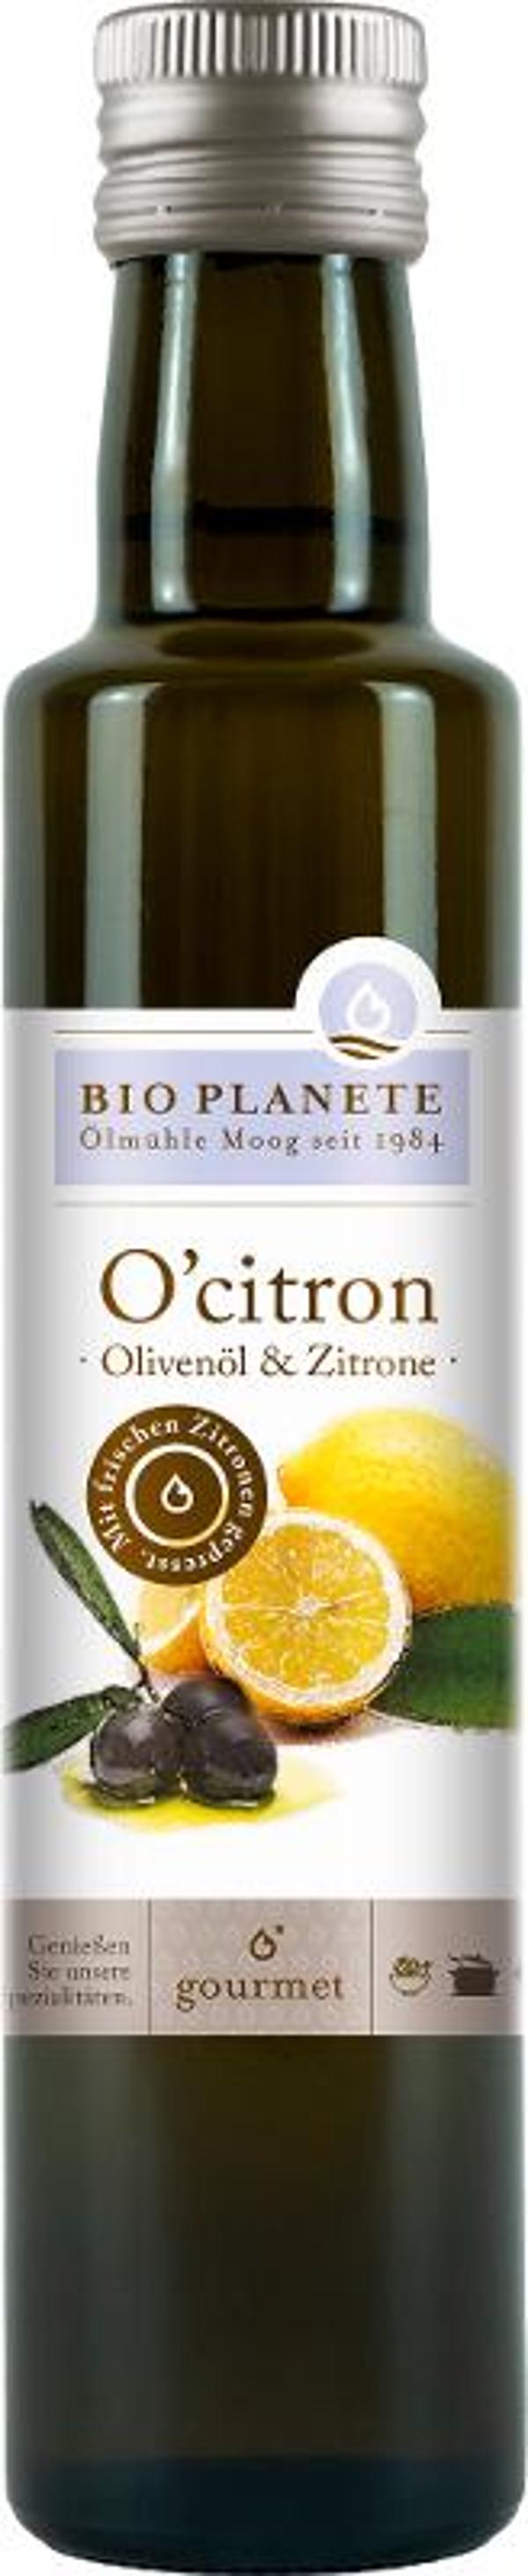 Produktfoto zu Olivenöl mit Zitrone 250 ml